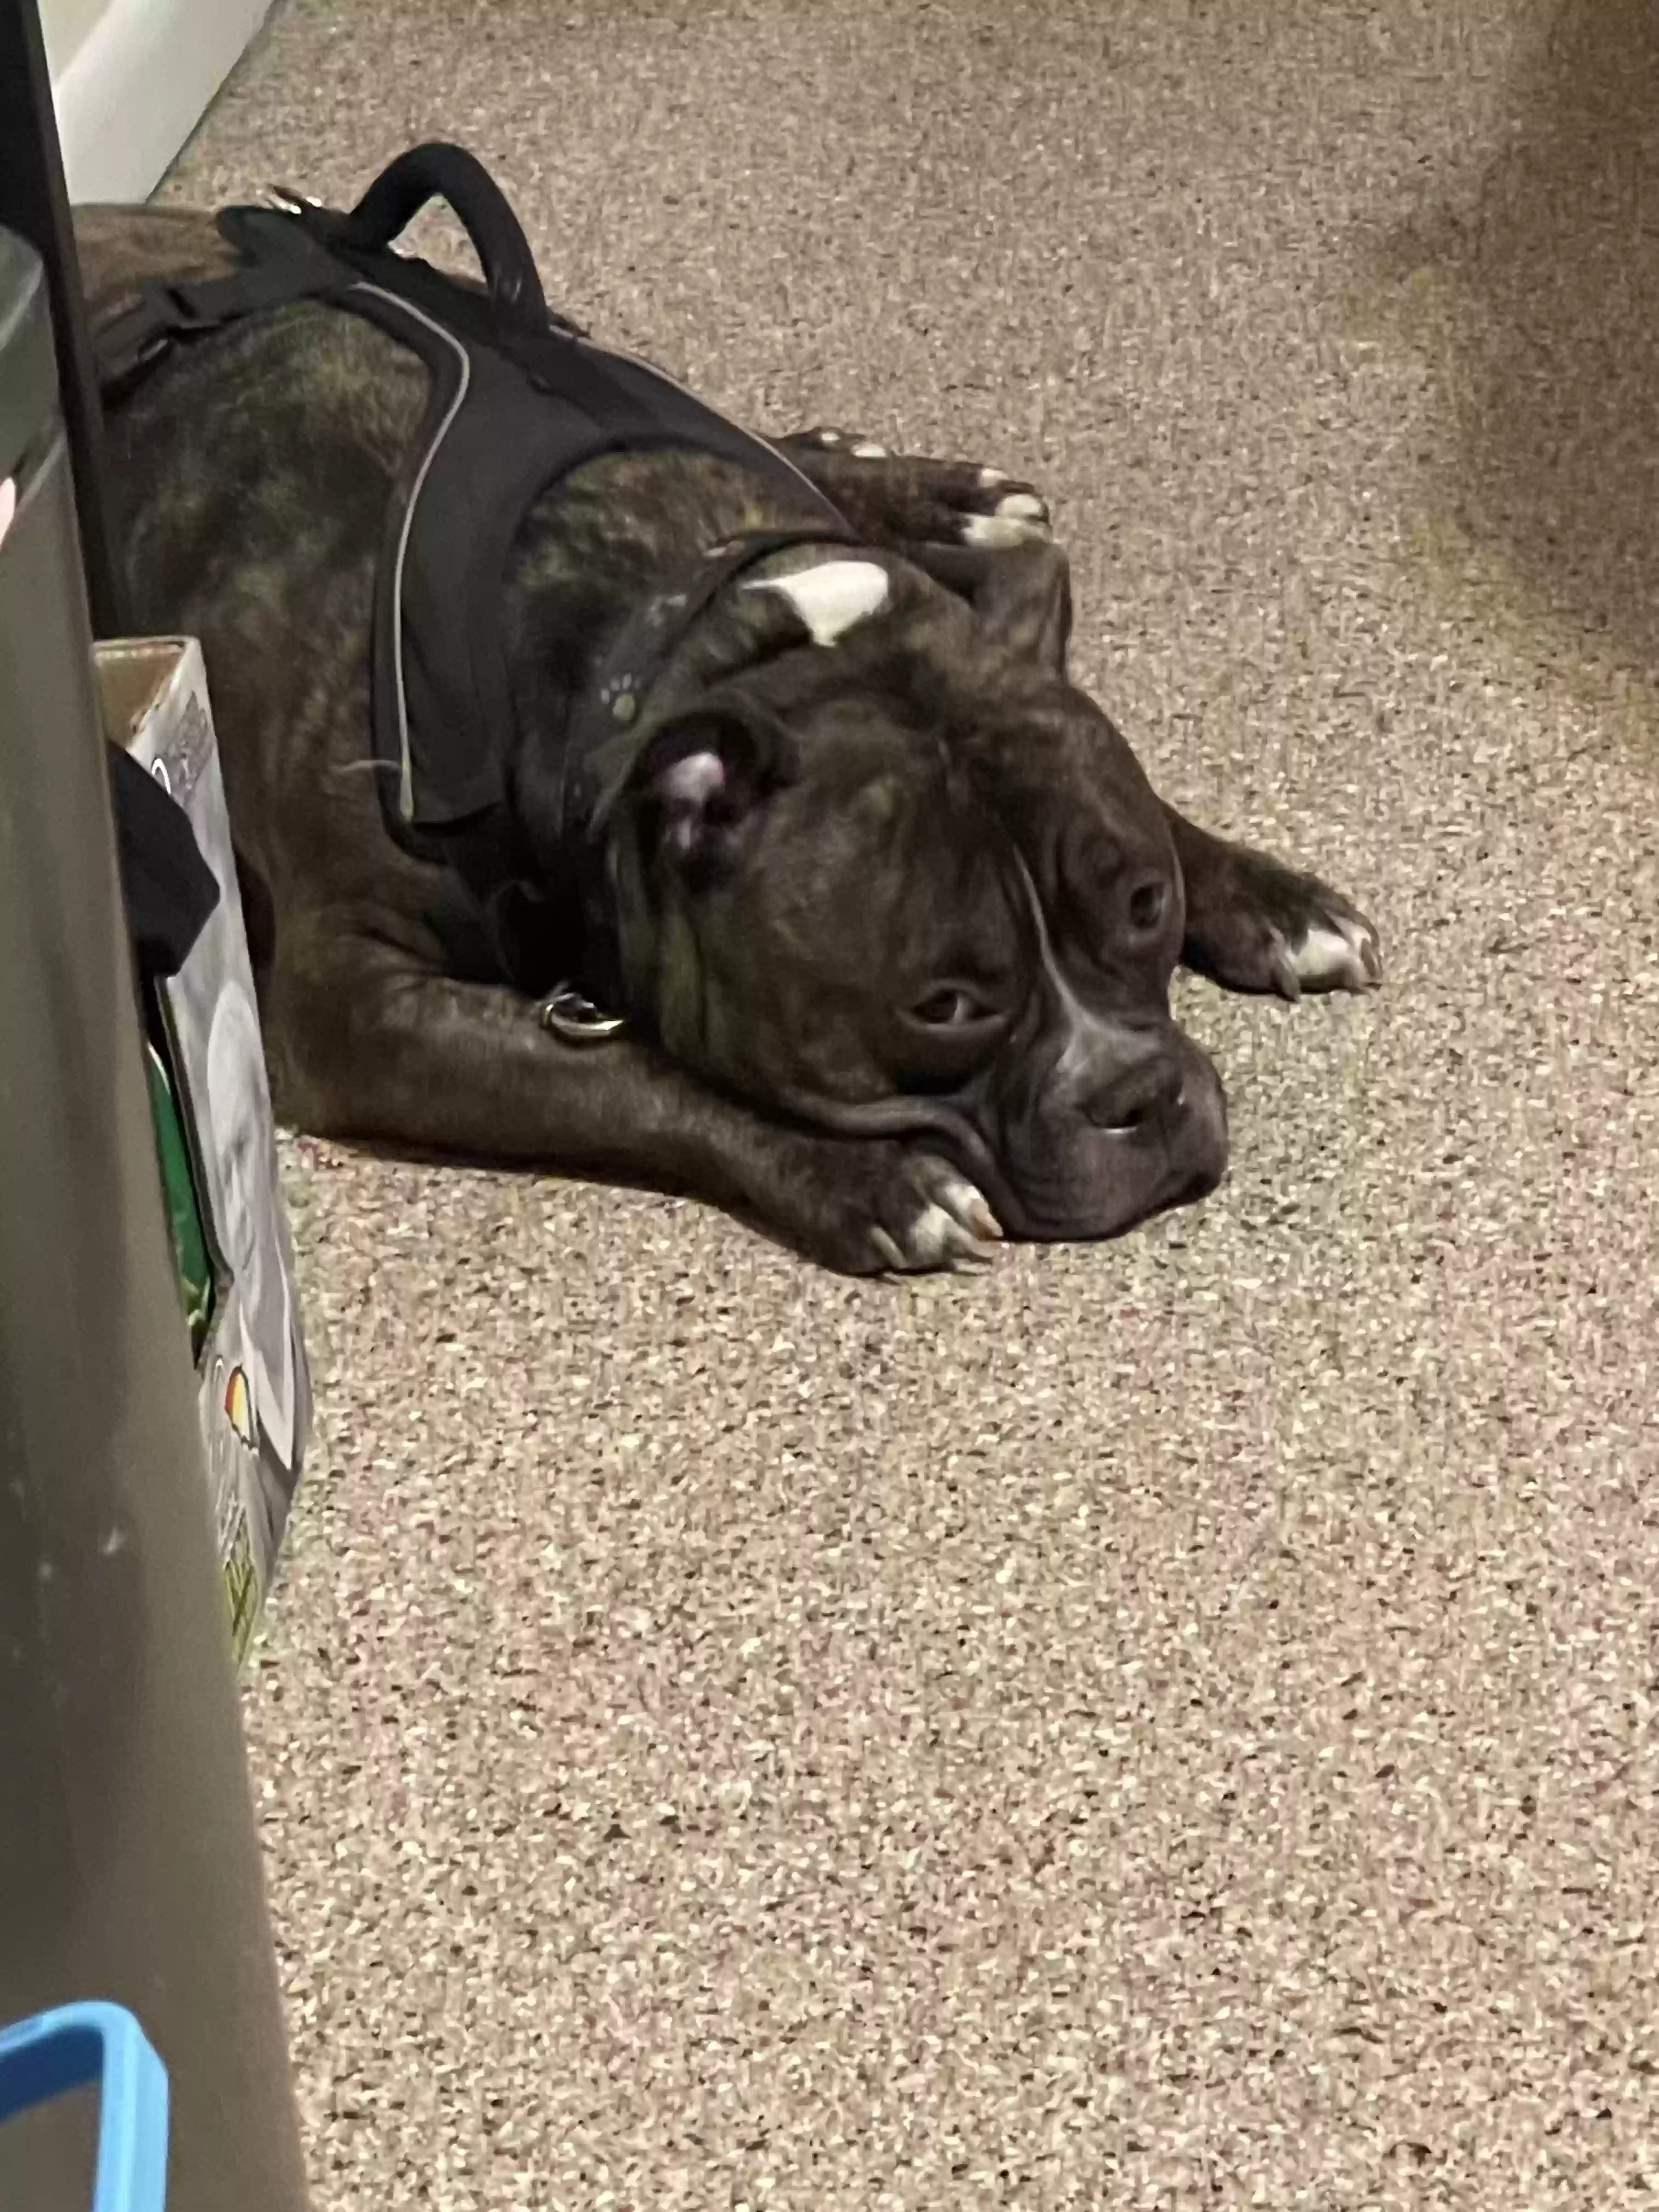 adoptable Dog in Buffalo,NY named Scrappy